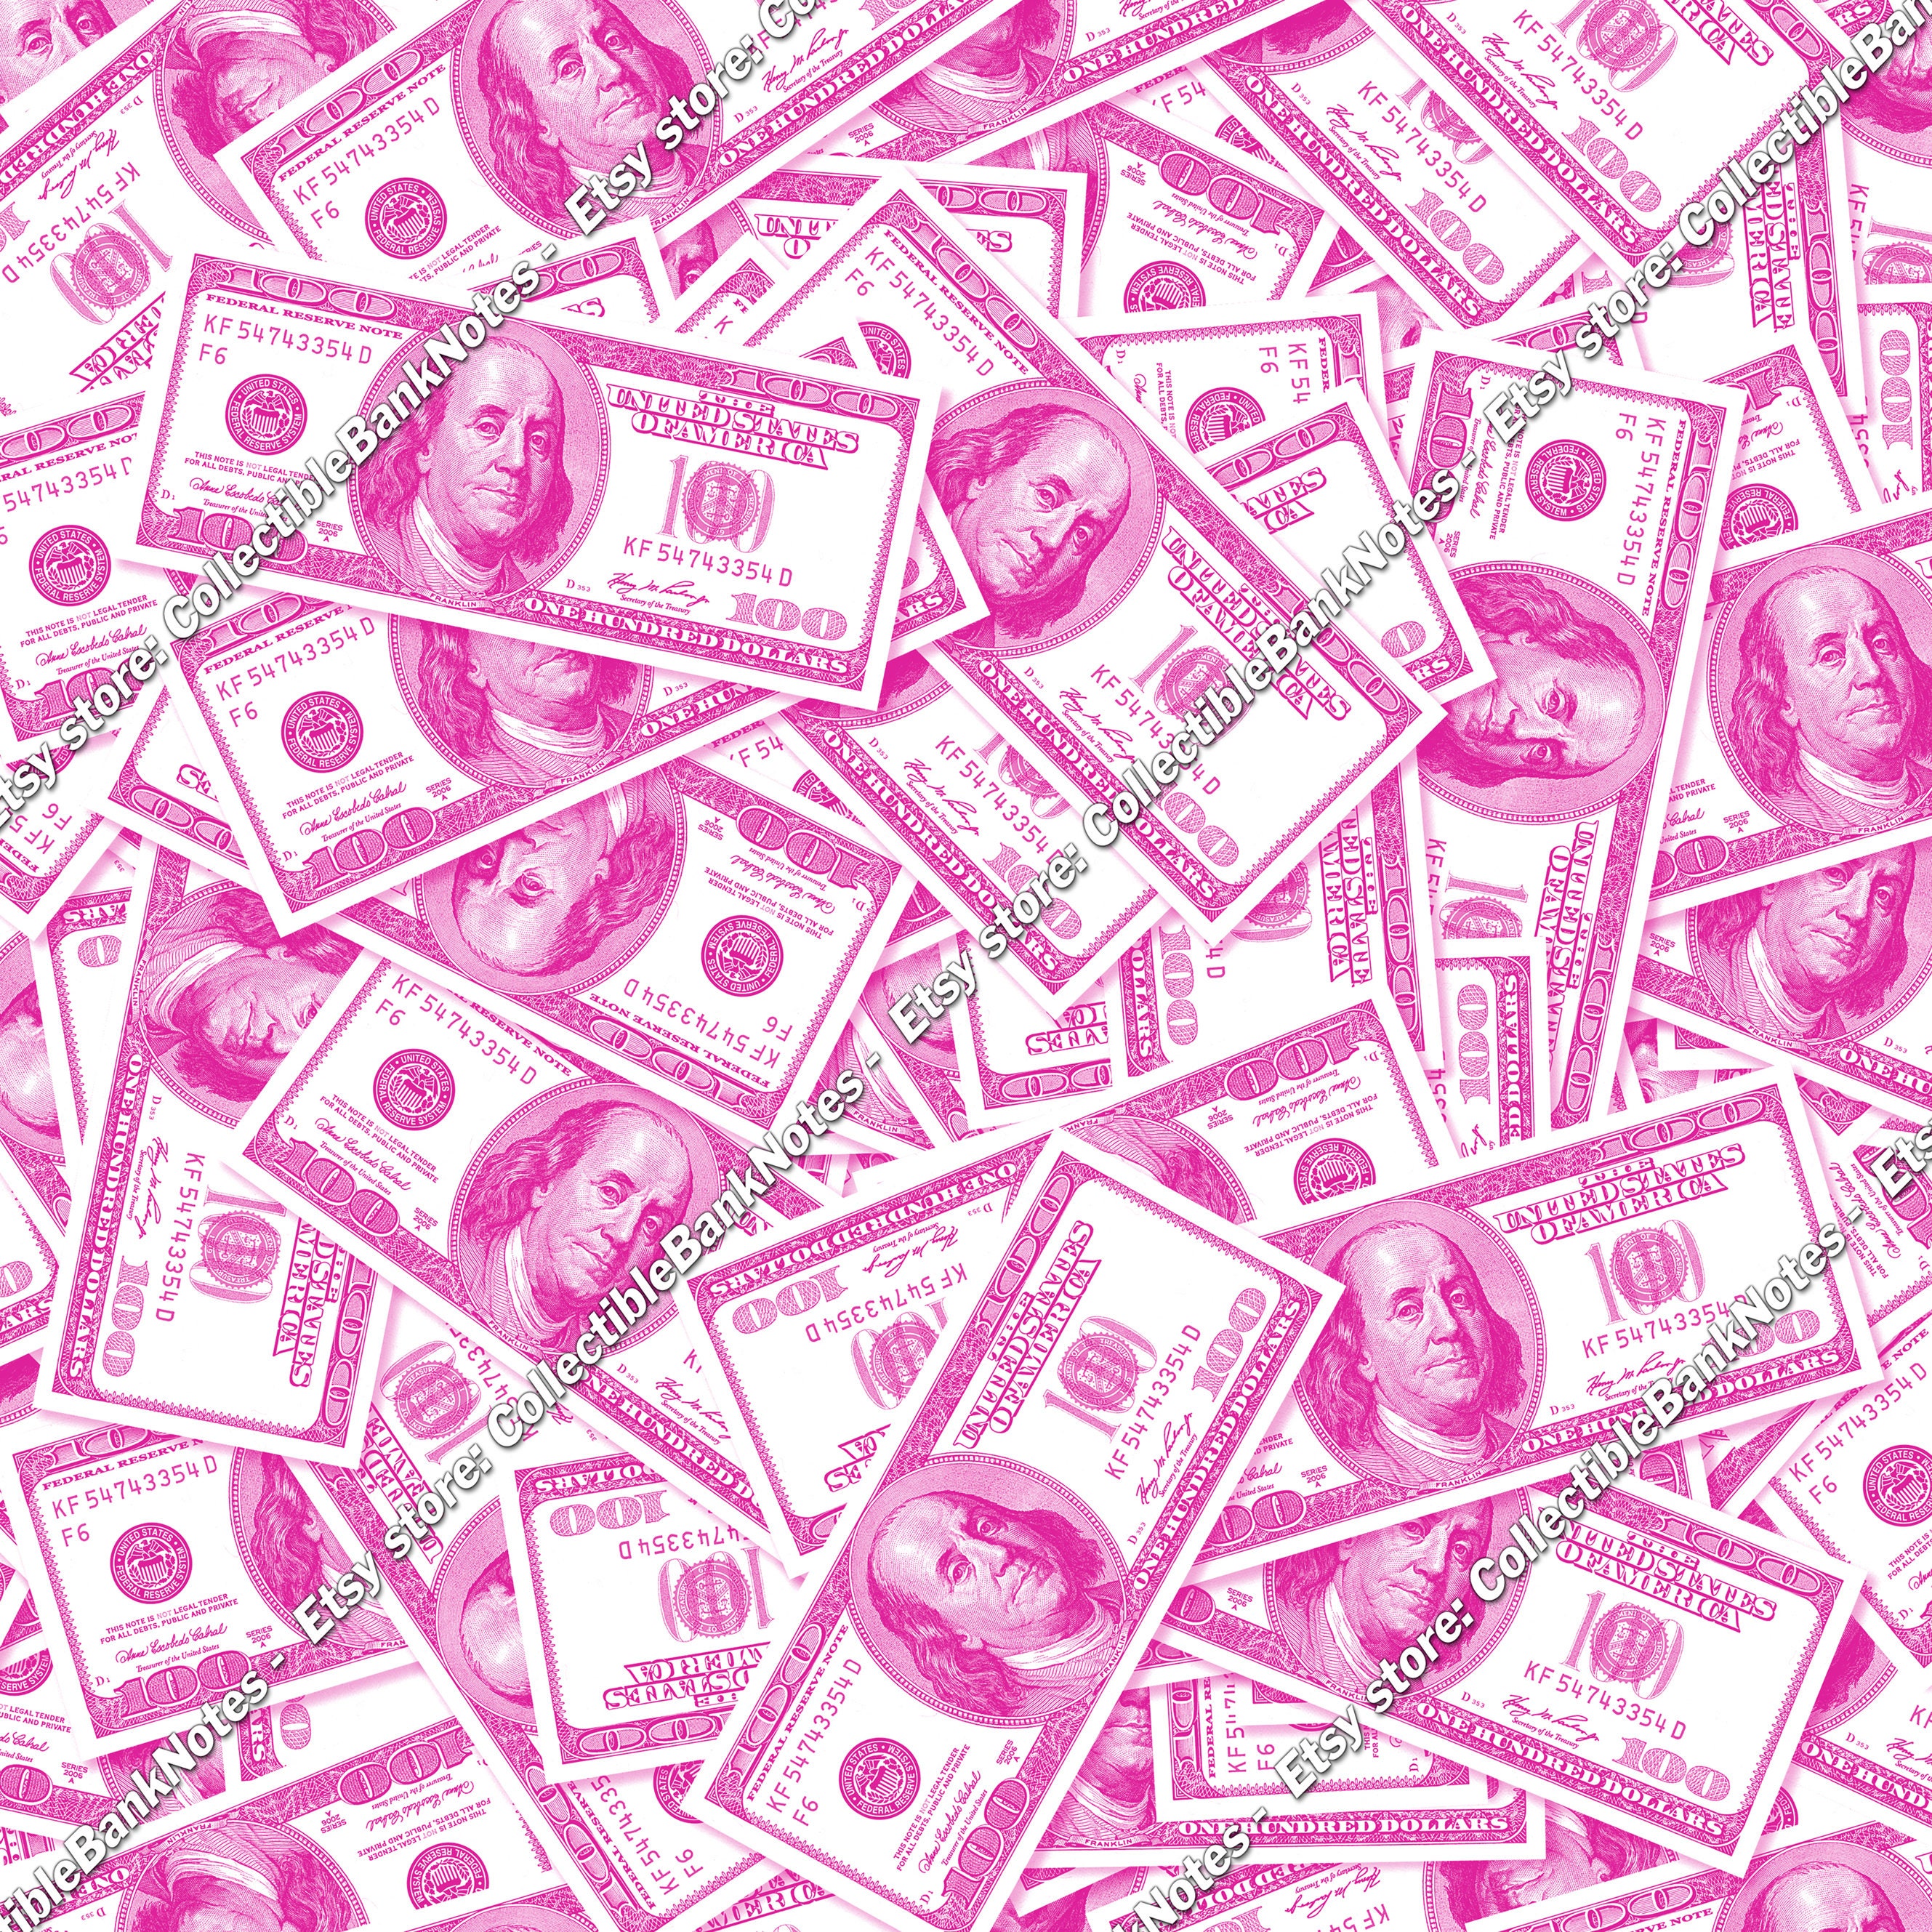 Hình nền tiền giấy 100 đô la màu hồng là một lựa chọn tuyệt vời để trang trí máy tính của bạn. Với màu hồng tươi sáng và hình ảnh của bill 100 đô la, hình nền này là một cách tuyệt vời để tạo ra sự khác biệt và thu hút sự chú ý của những người xung quanh. Hãy xem ngay hình ảnh liên quan để cảm nhận sự độc đáo của nó.